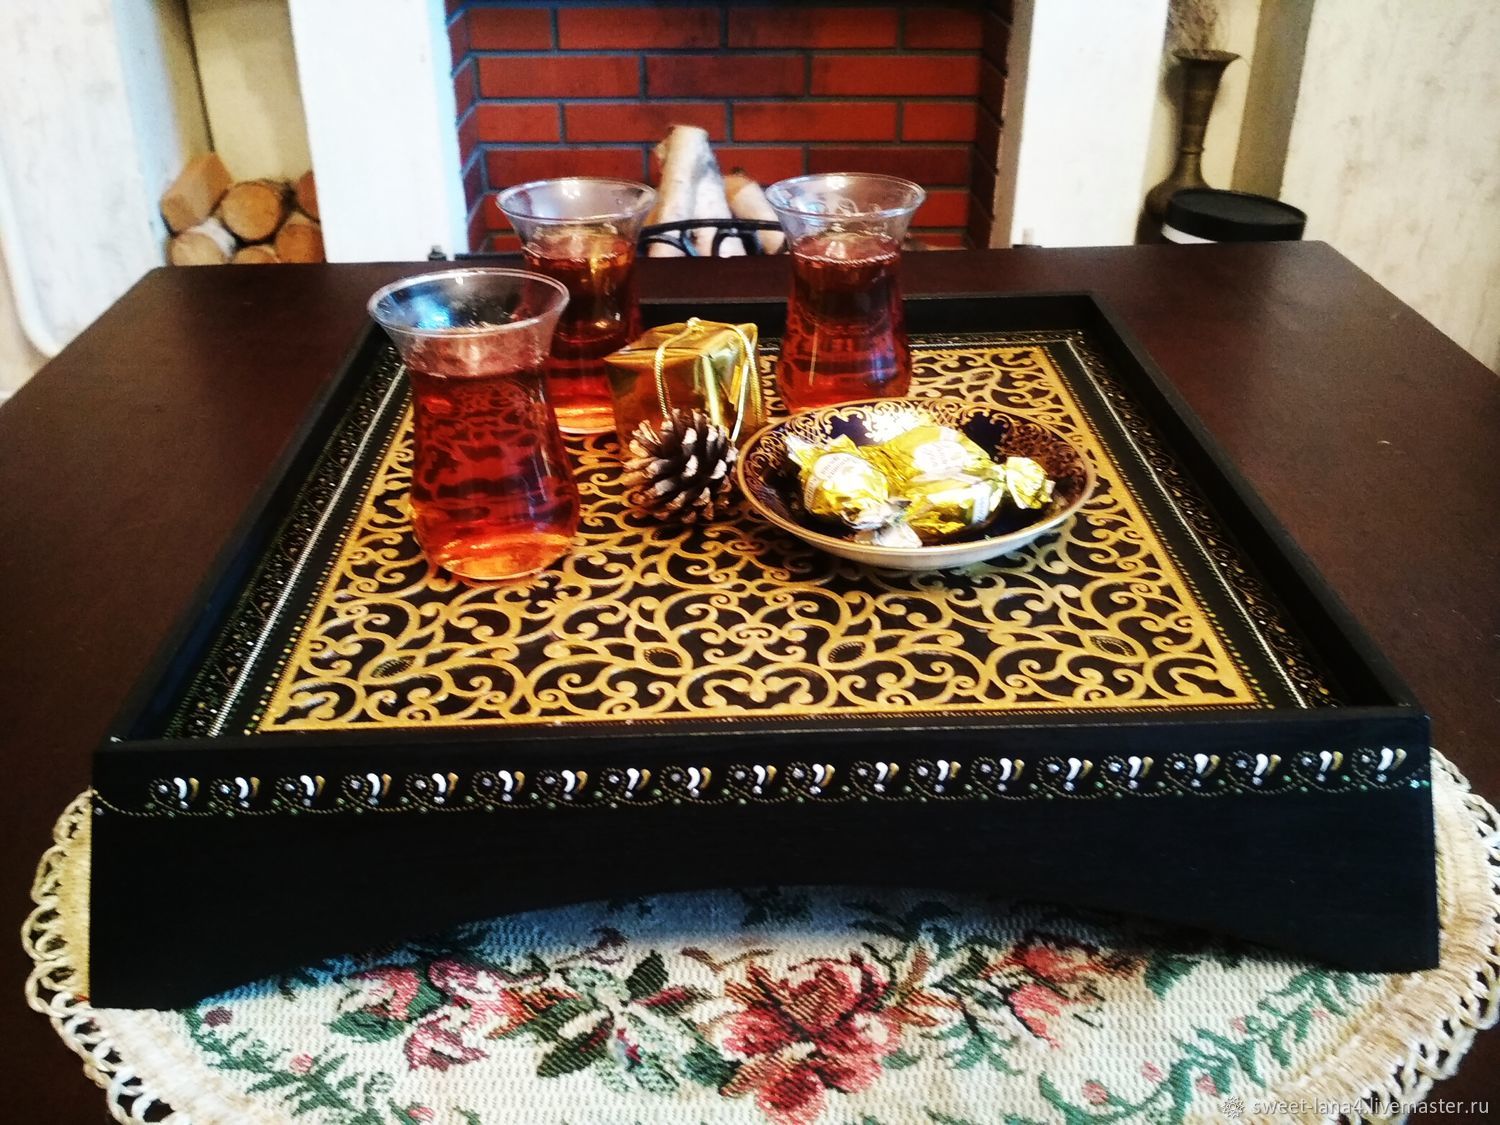 Гвоздь узбекского стола кроссворд